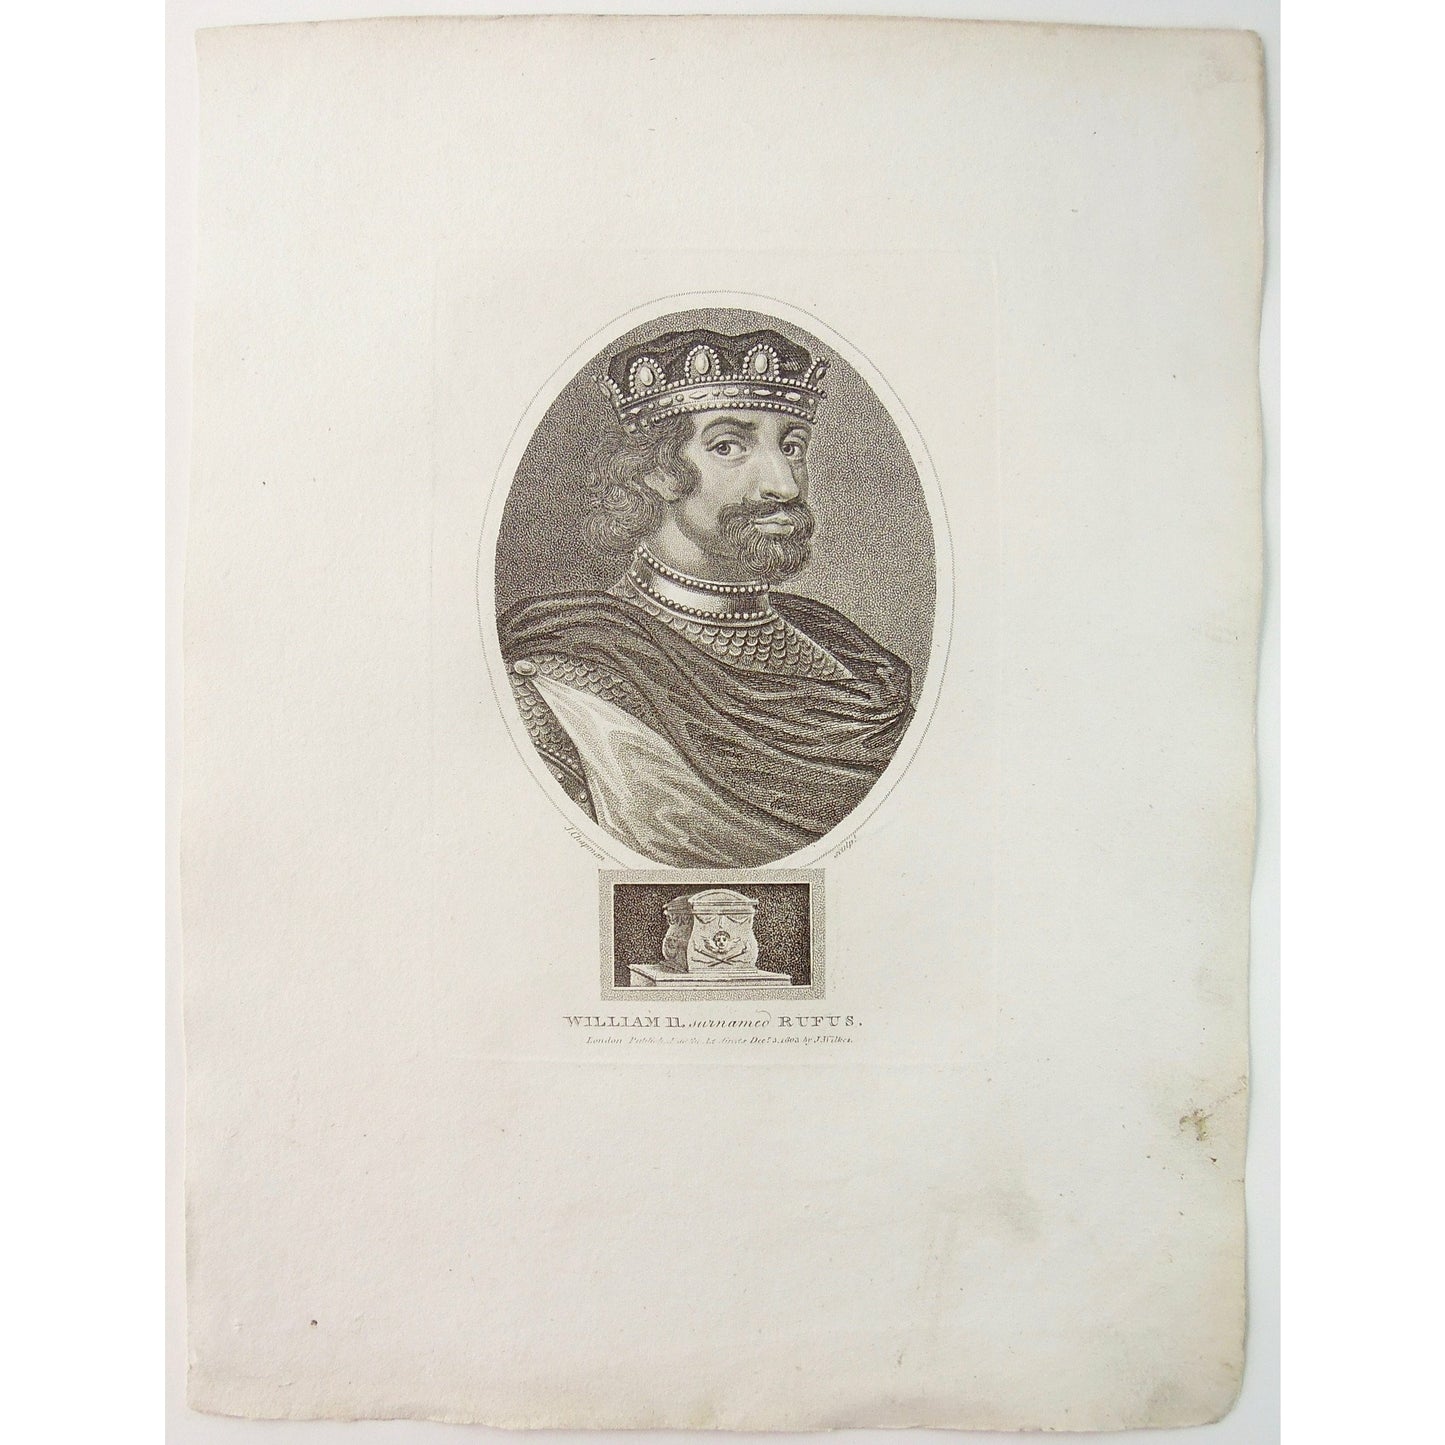 William II. surnamed Rufus.  (B1-398)